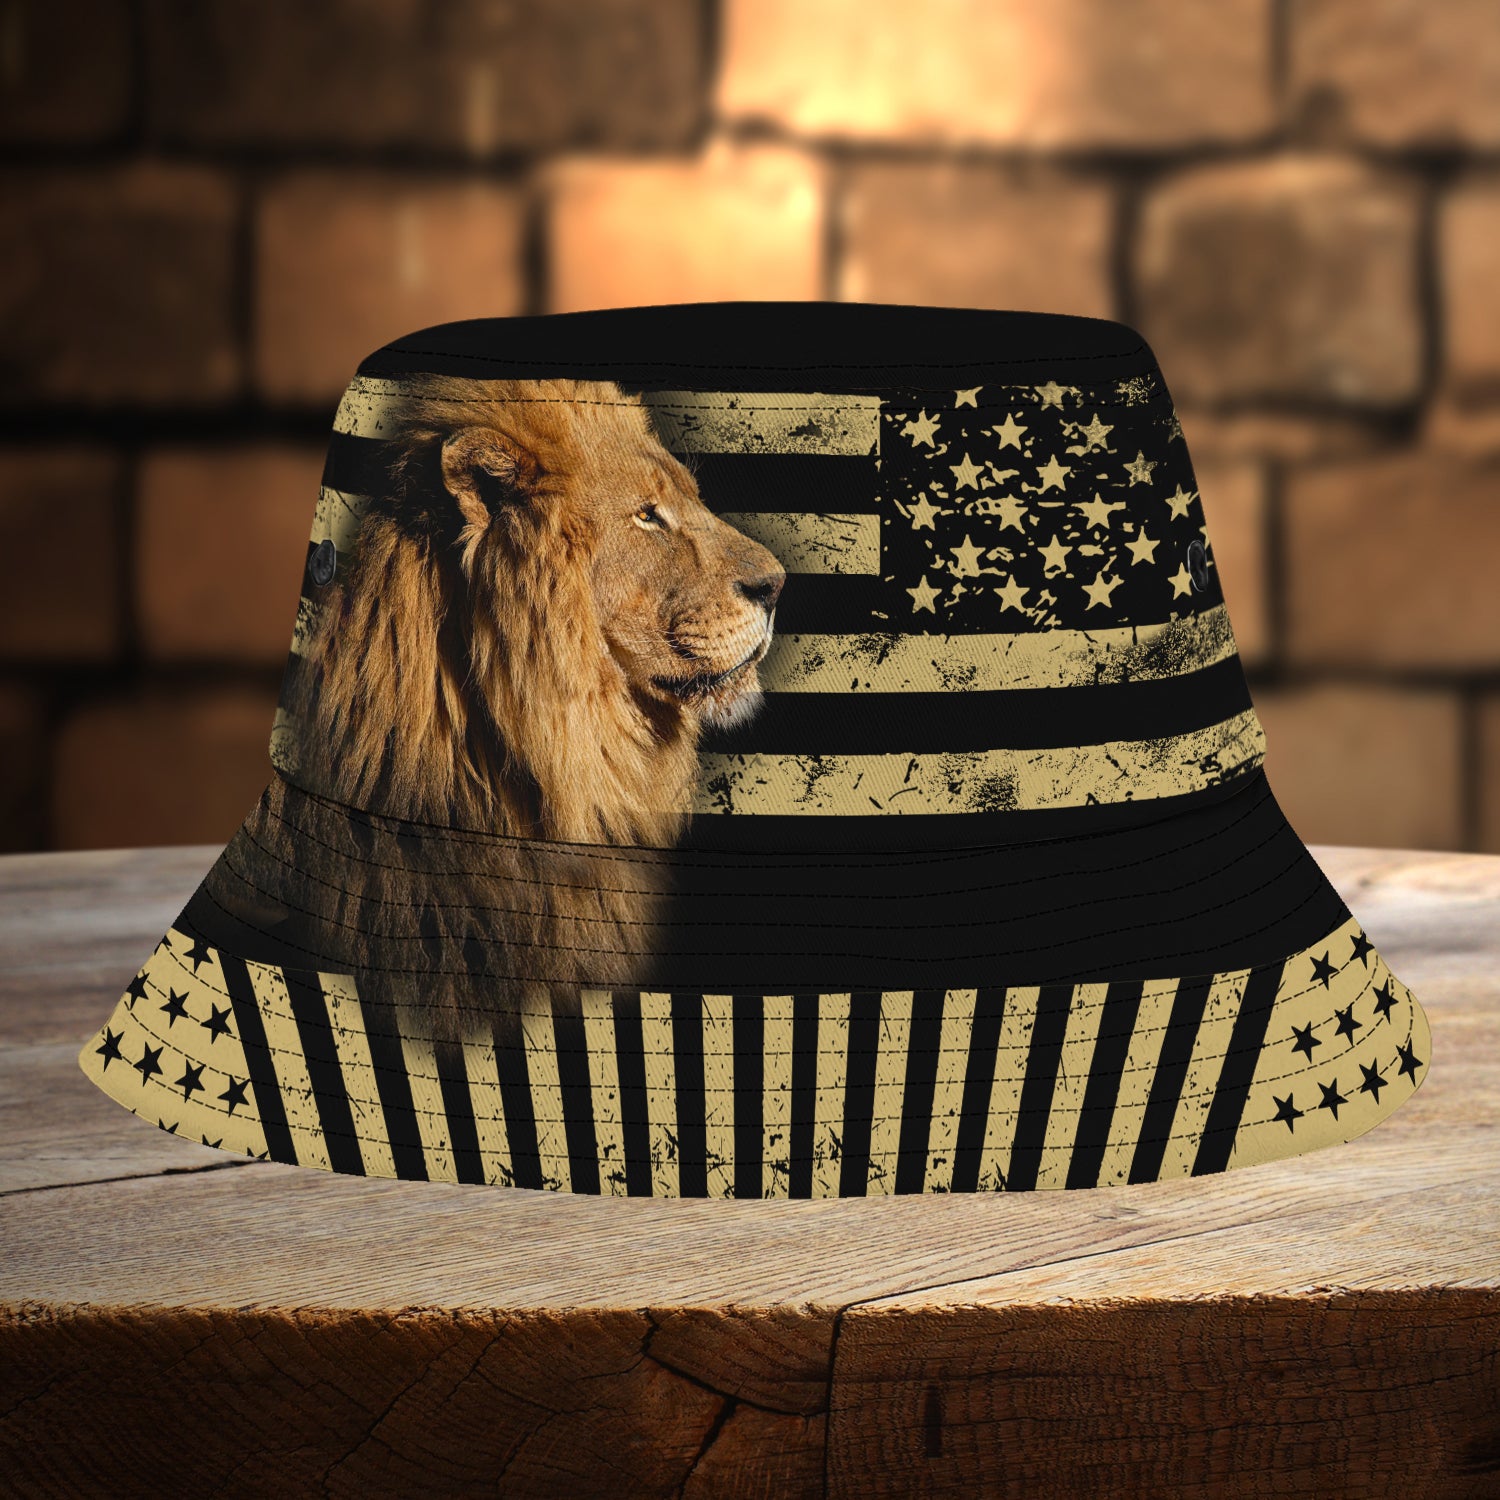 Custom Bucket Hat - Lion King - Fuly 19